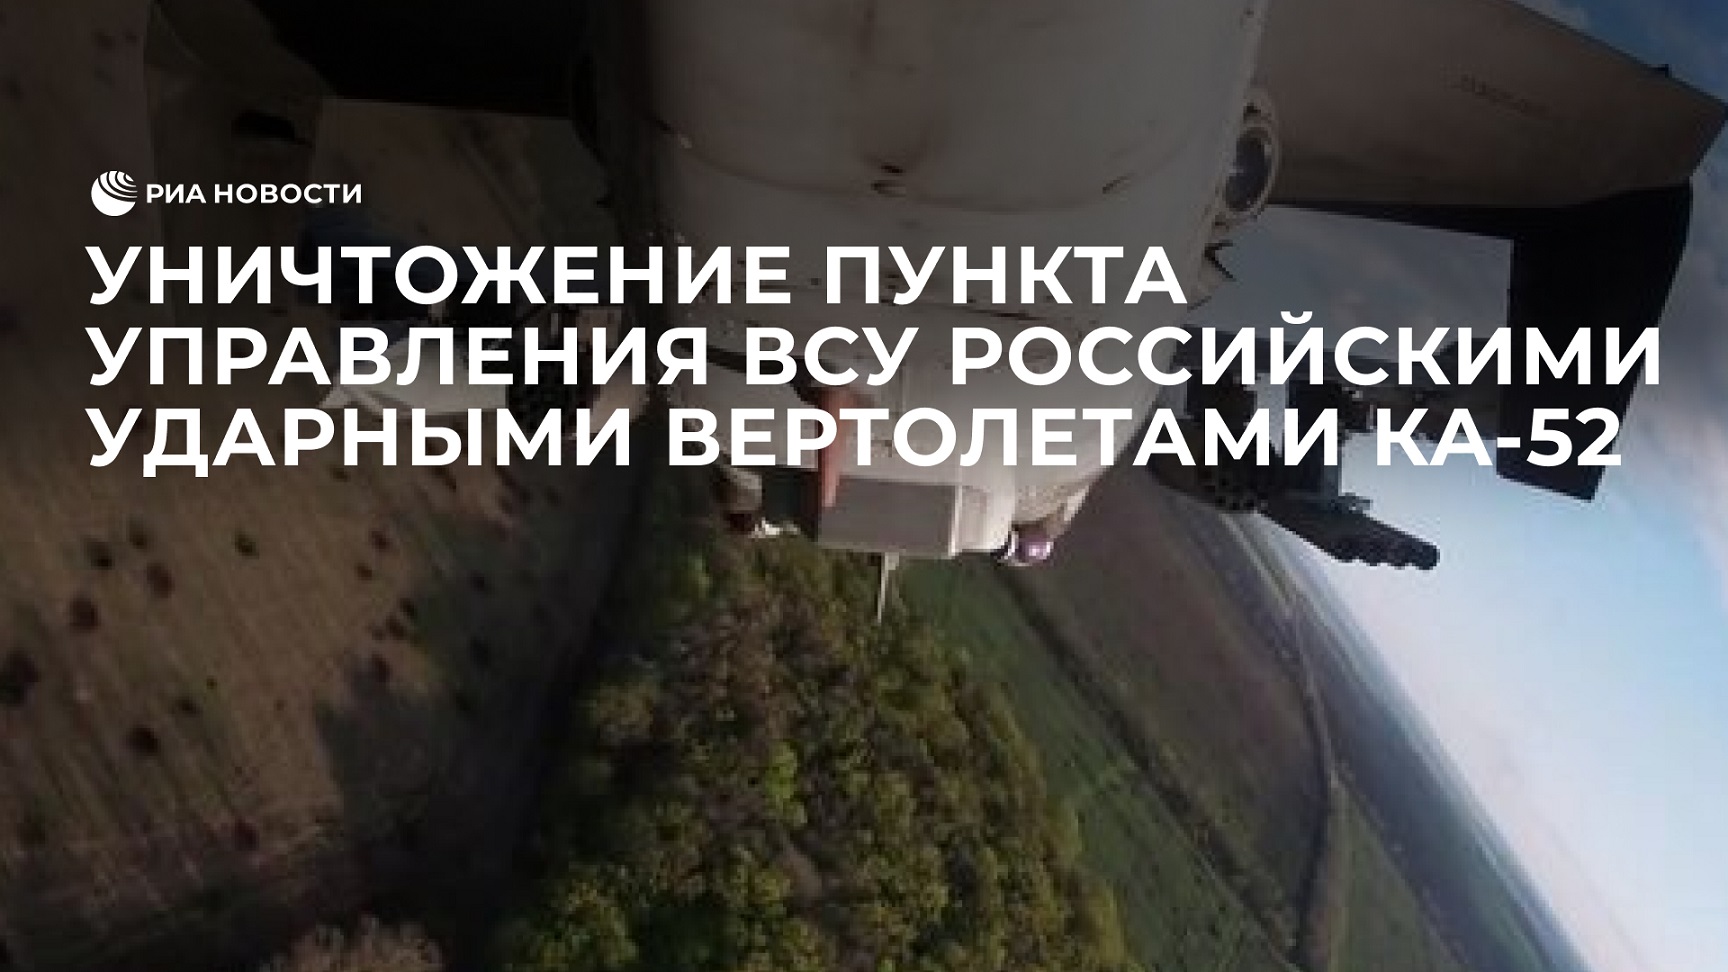 Уничтожение пункта управления ВСУ российскими ударными вертолетами Ка-52